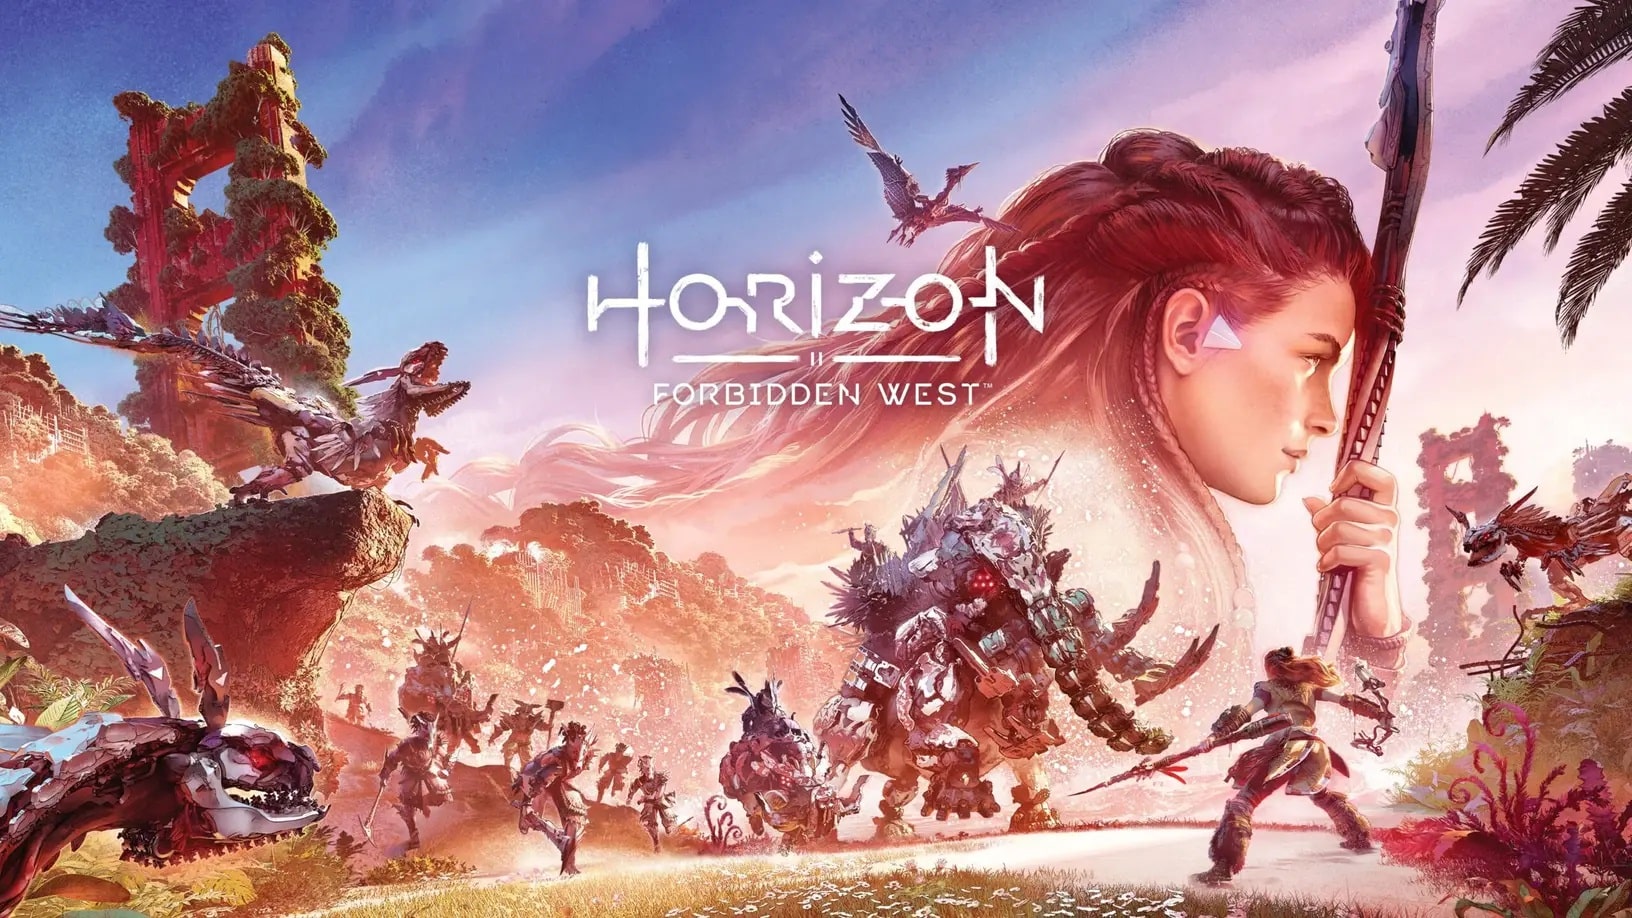 Horizon Forbidden West ستقدّم نهاية واحدة ولكنّ قرارات اللاعب ستلعب دوراً في تغيير بعض الأحداث